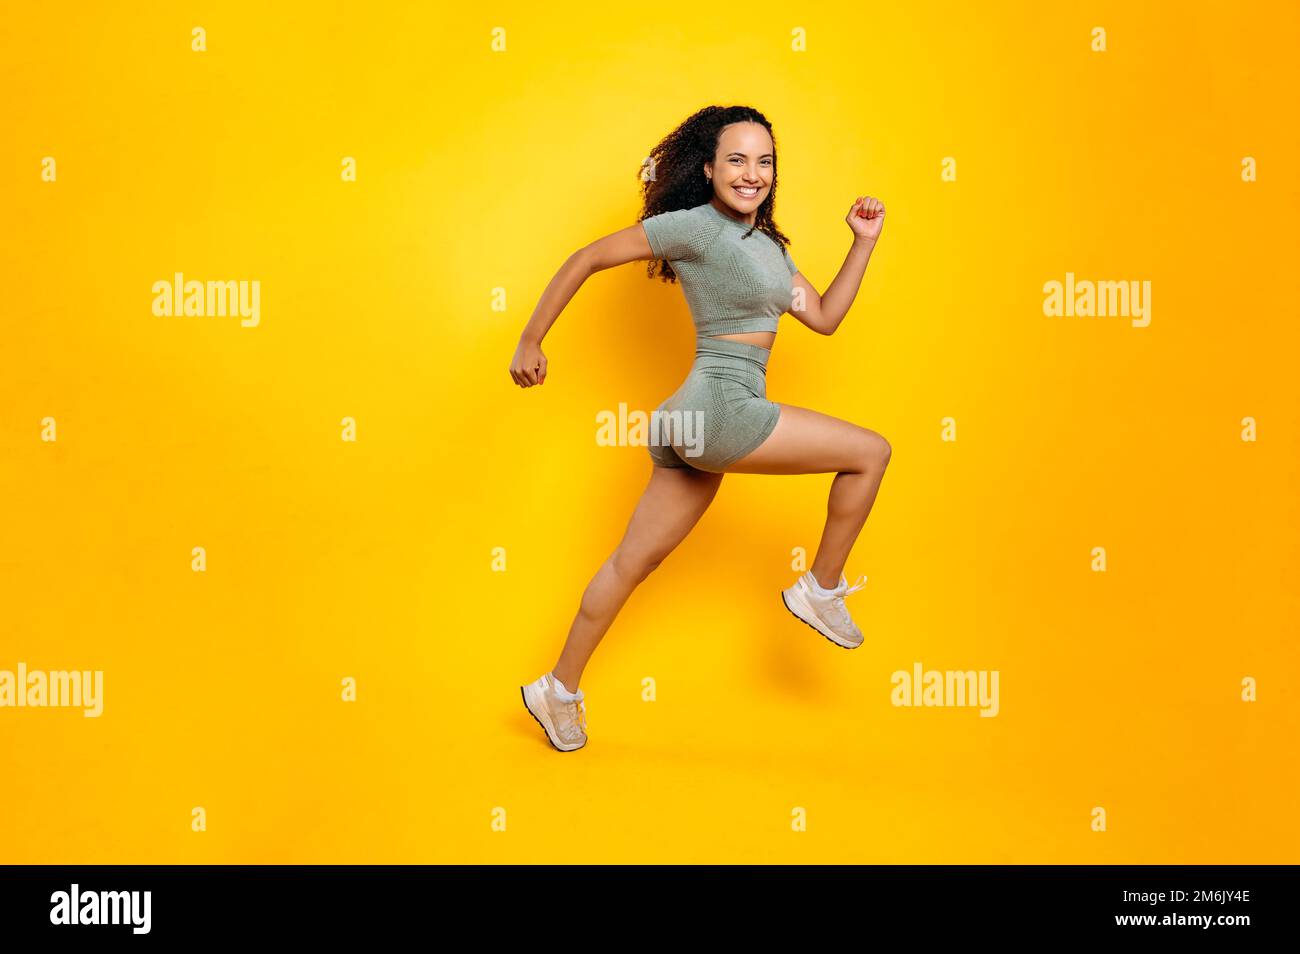 Sportlicher Lifestyle. Foto in voller Länge einer sportlichen, fröhlichen brasilianerin oder Latino-Frau in Sportbekleidung, Training, Springen, Laufen, Lächeln vor der Kamera, Isolierter orangefarbener Hintergrund Stockfoto